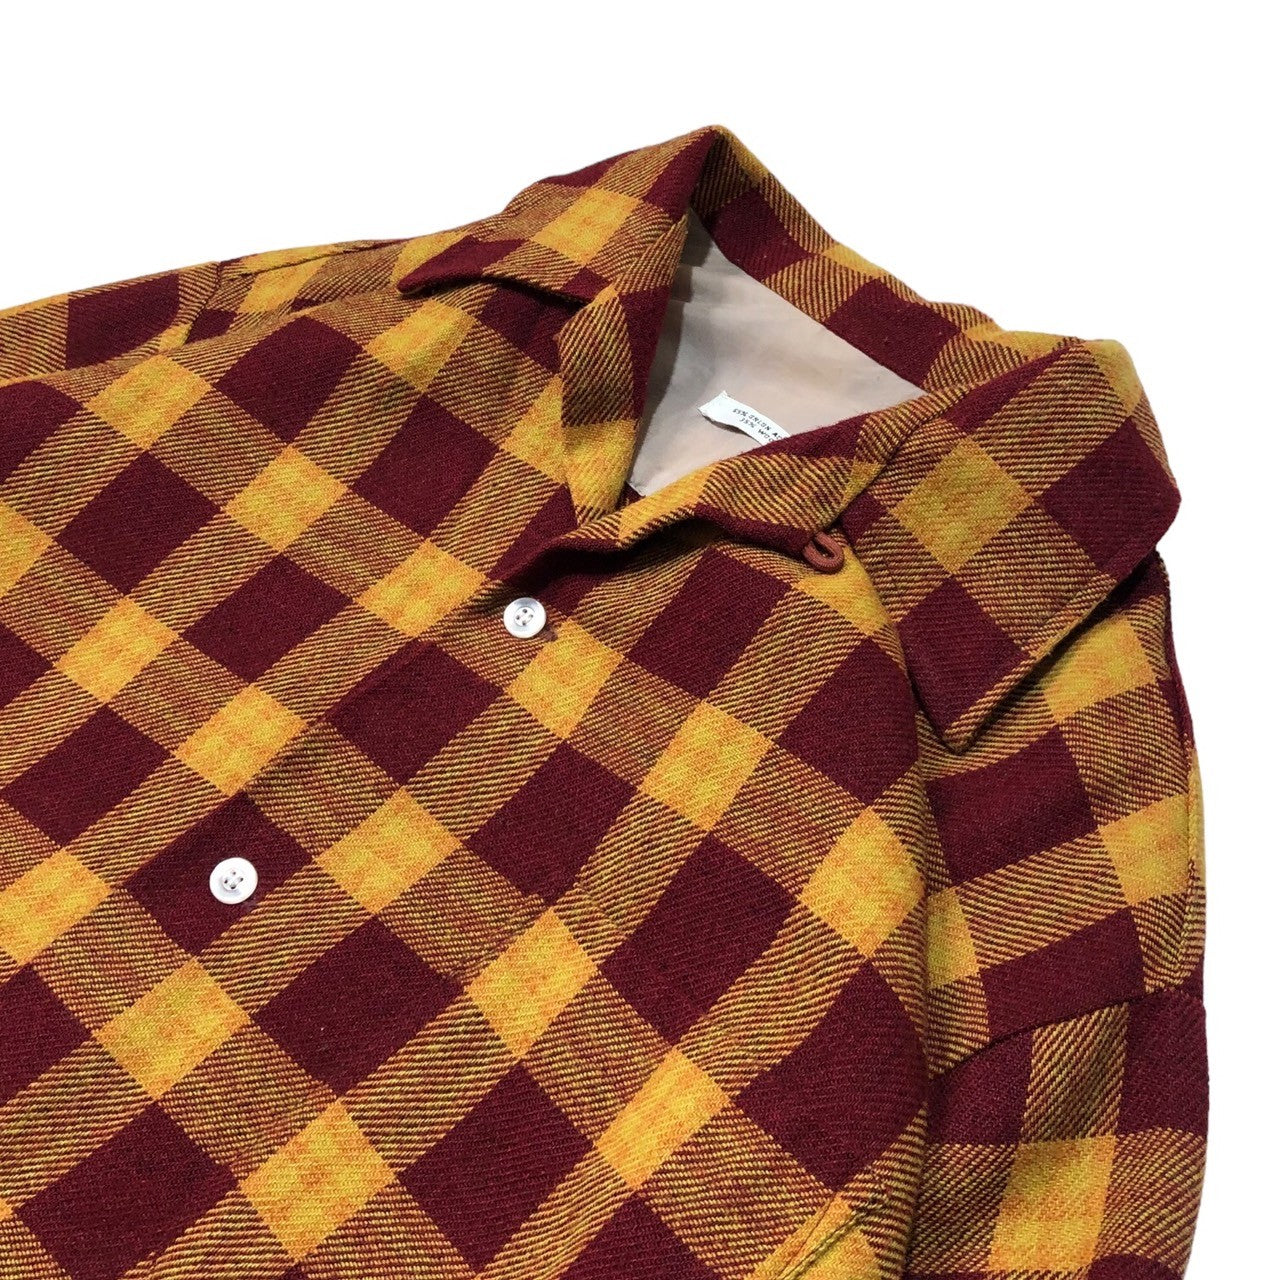 beaver shirt company(ビーバーシャツカンパニー) 80's ~ 90's Wool blend open collar shirt ウールブレンド オープンカラー シャツ ヴィンテージ M レッド×オレンジ 推定80年代~90年代